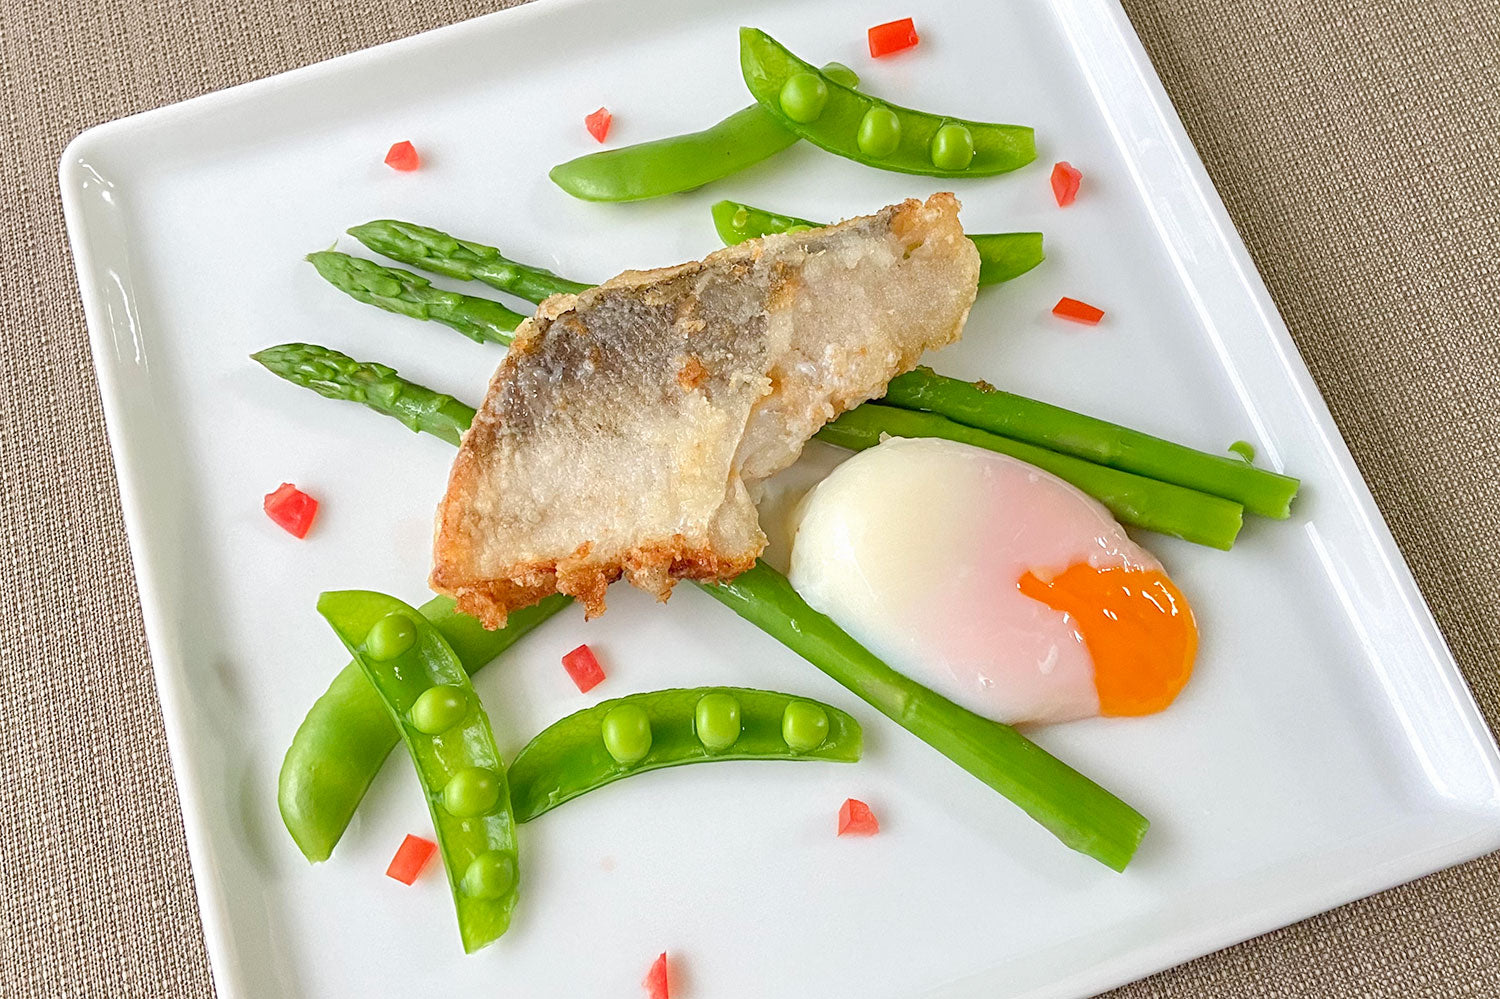 メルルーサと野菜の半熟卵添えのレシピ 料理 作り方 骨取り魚 骨なし魚のオカフーズ Okafoods Onlineshop